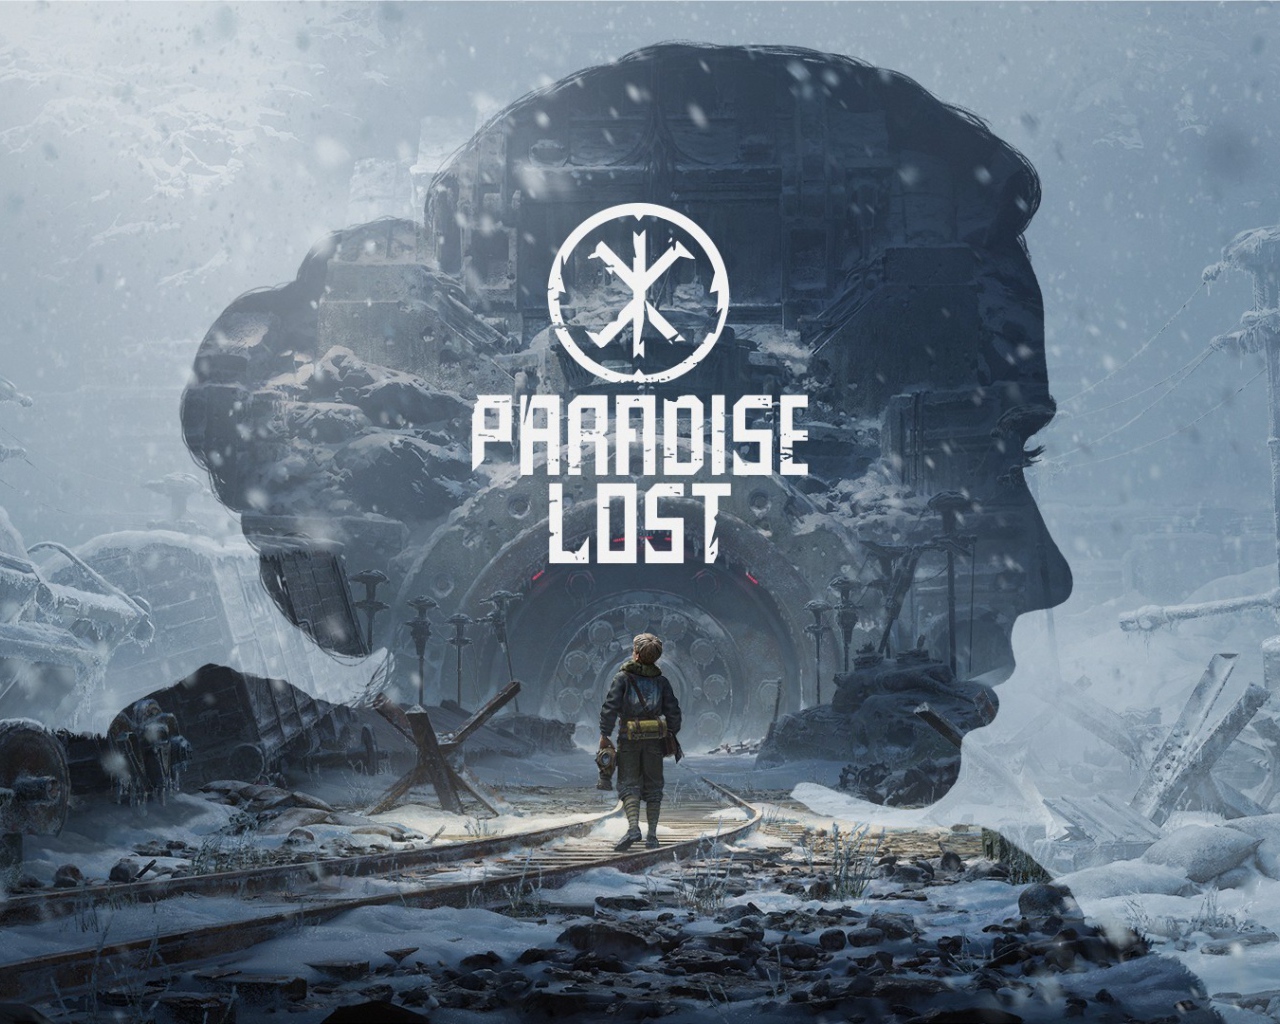 Постер компьютерной игры Paradise Lost, 2021